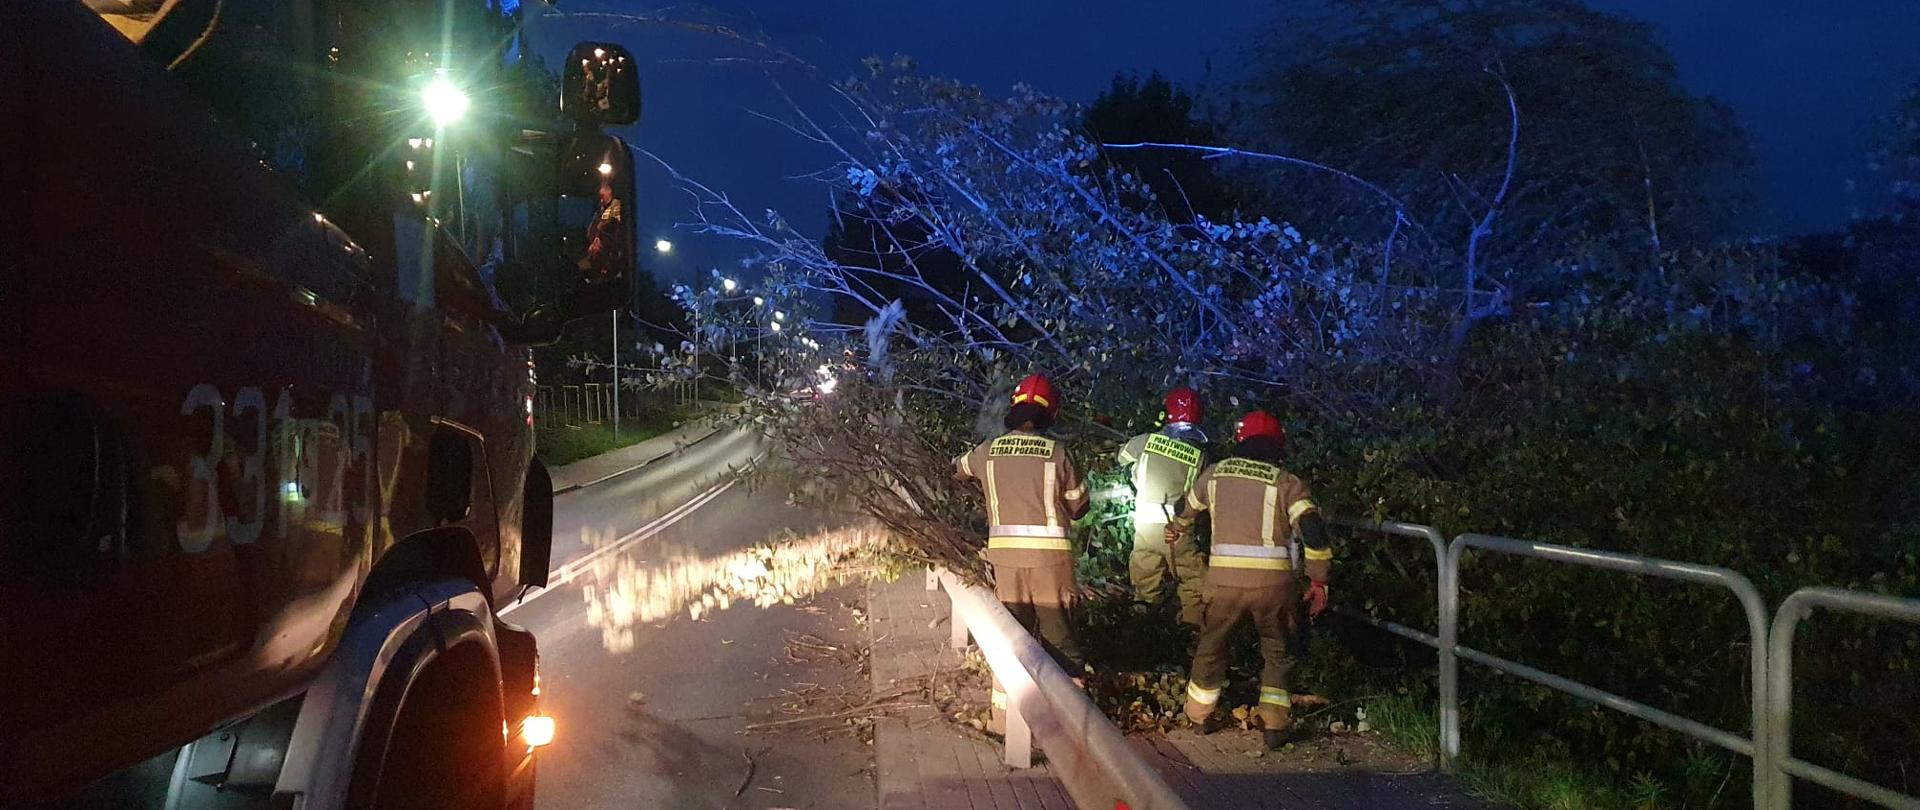 Na ulicy wieczorem stoi samochód strażacki, po prawej stronie, na chodniku trzech strażaków w ubraniach specjalnych i hełmach usuwa przewrócone na chodnik drzewo.